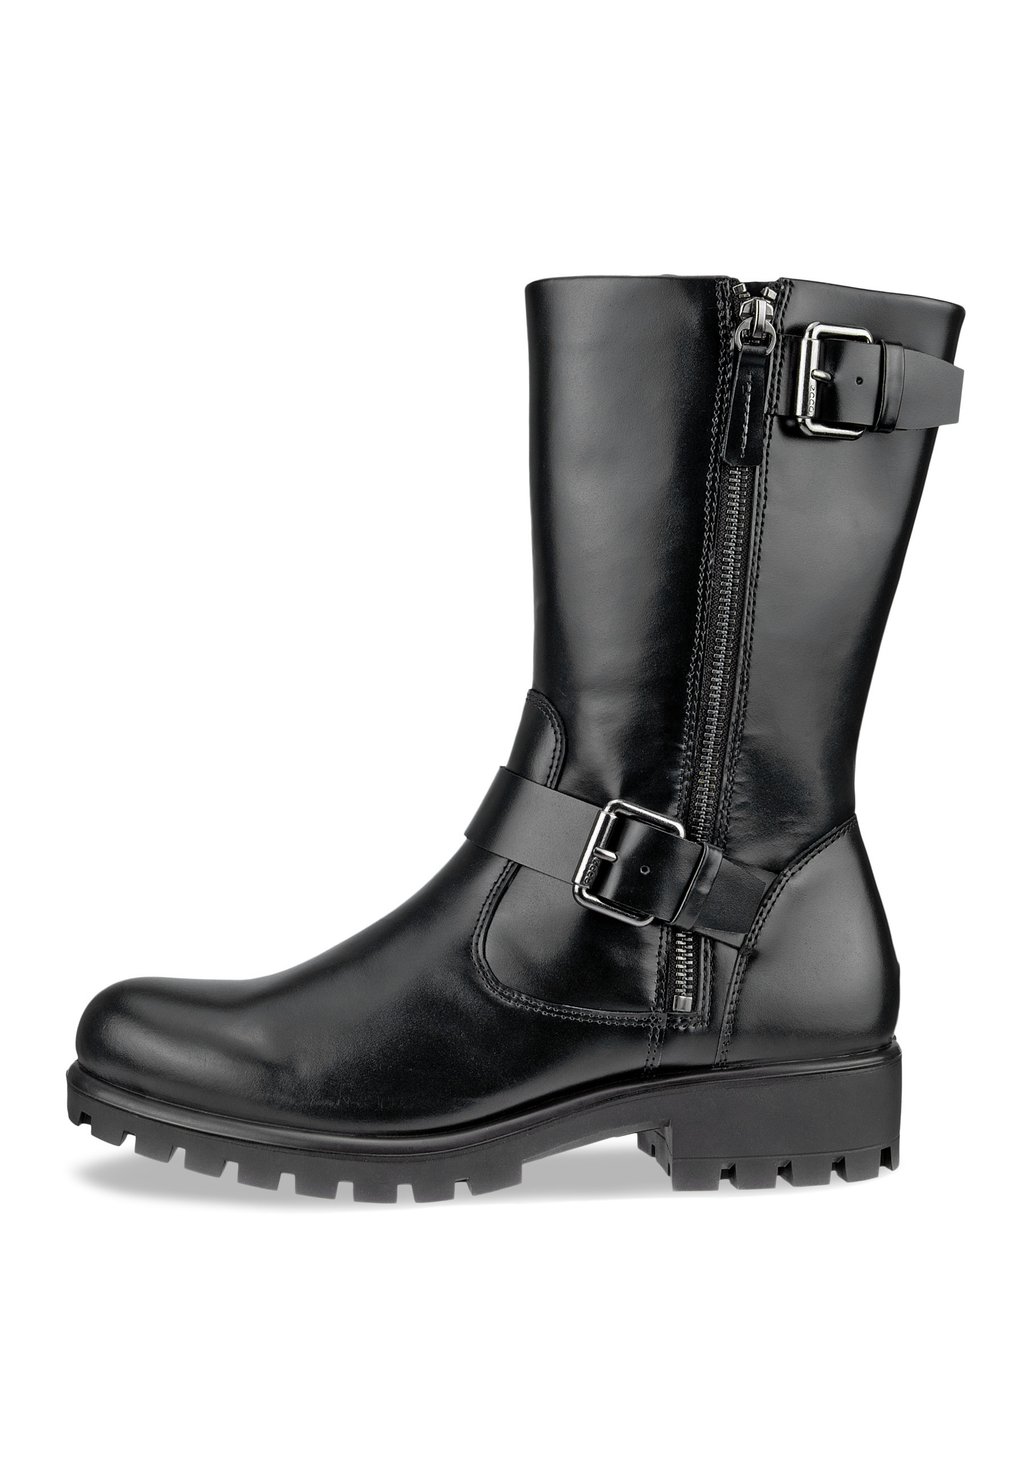 Техасские/байкерские ботинки Modtray W ECCO, черный ботинки высокие ecco modtray w темно коричневый 37 размер